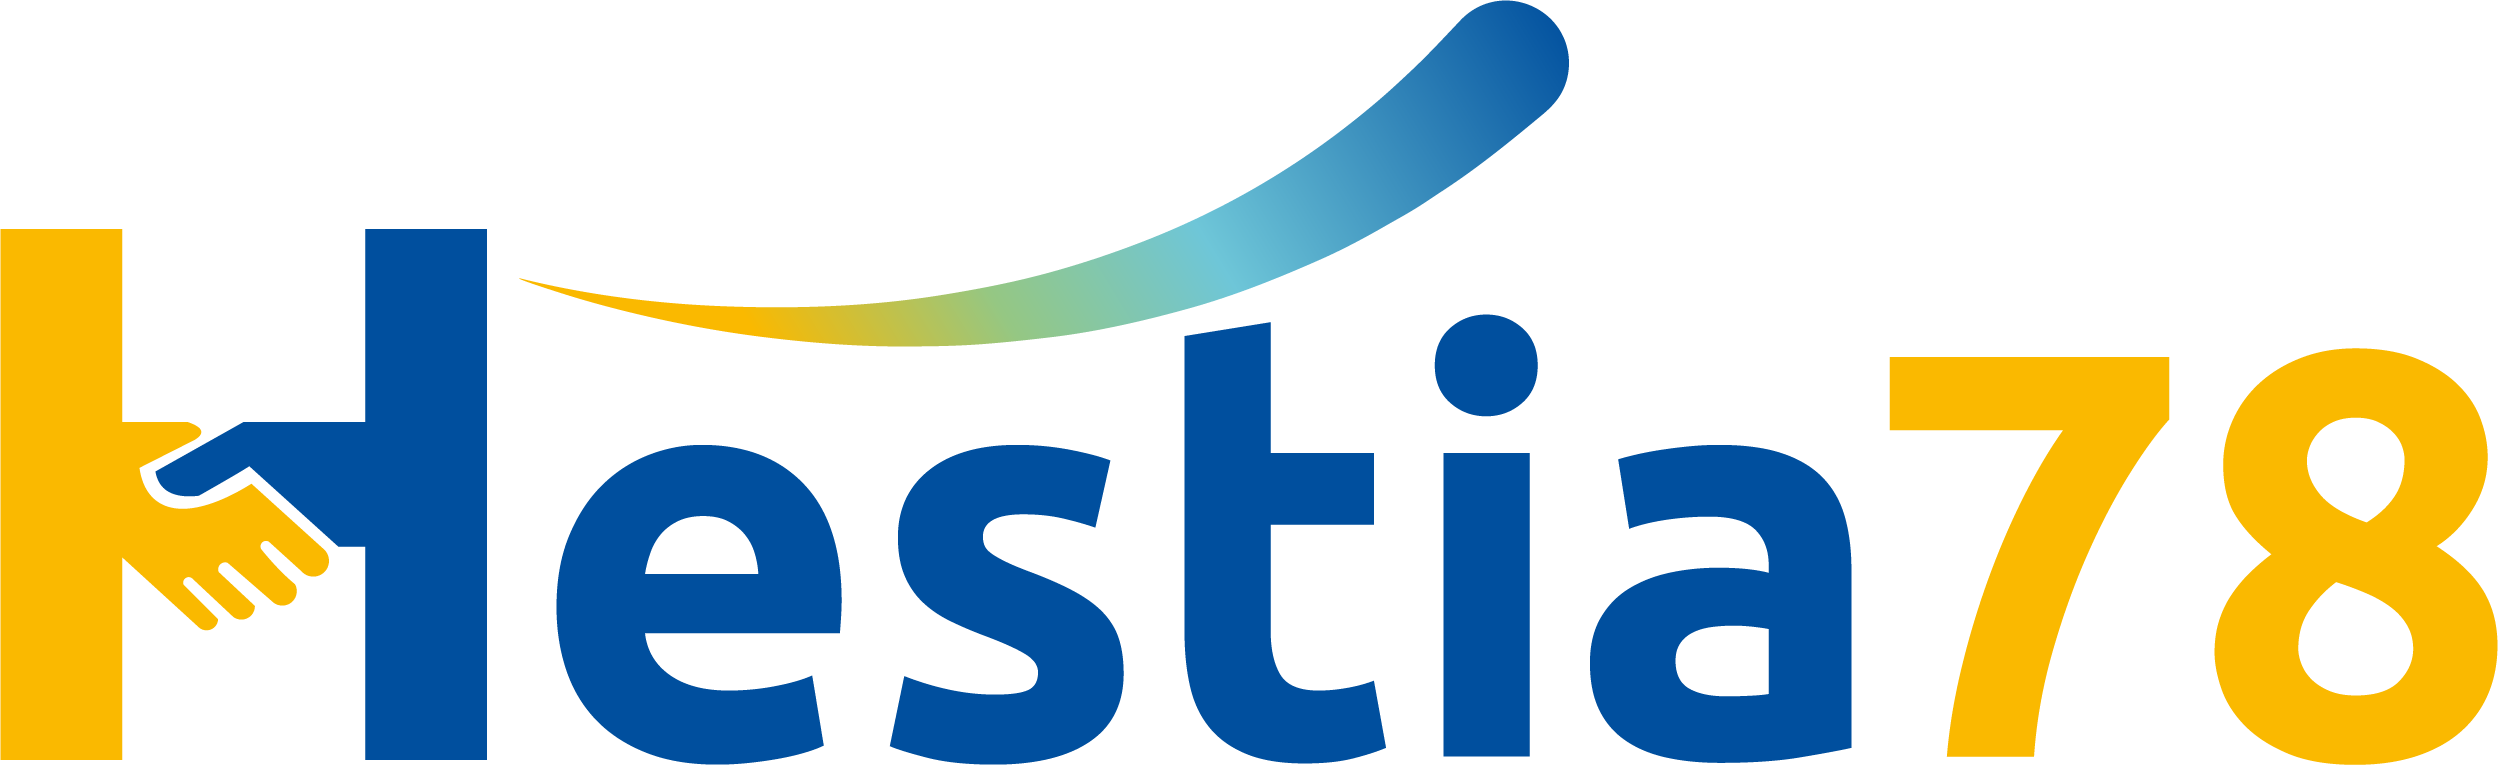 logo-hestia78